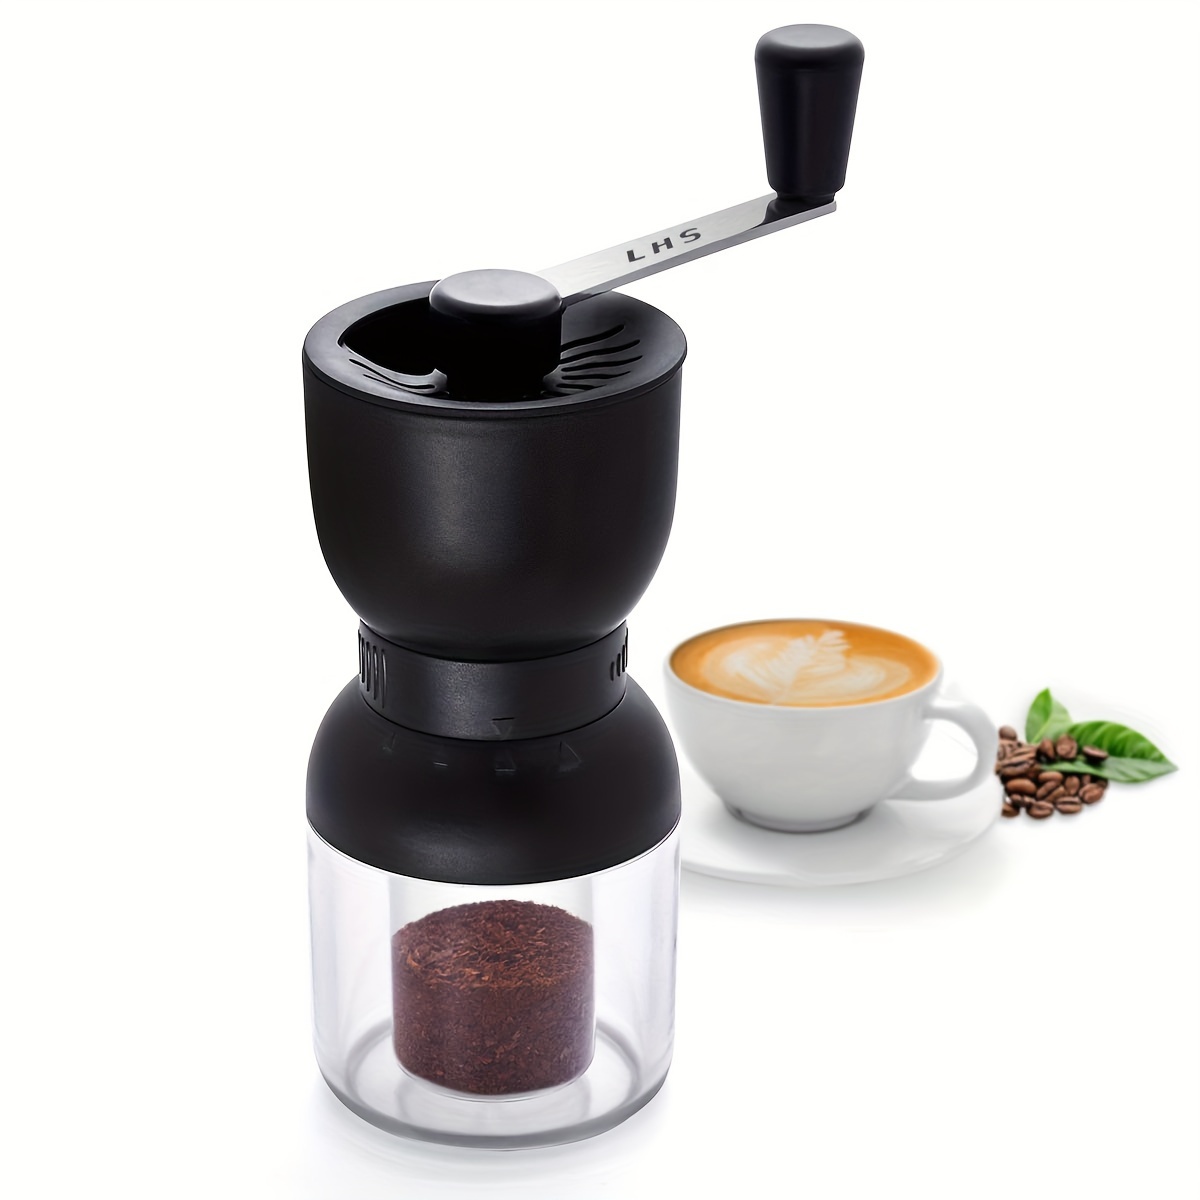 https://img.kwcdn.com/product/adjustable-stainless-steel-coffee-grinder/d69d2f15w98k18-af6d4c7a/Fancyalgo/VirtualModelMatting/78ddaadaf6db77b55703bcc6eefbe5ba.jpg